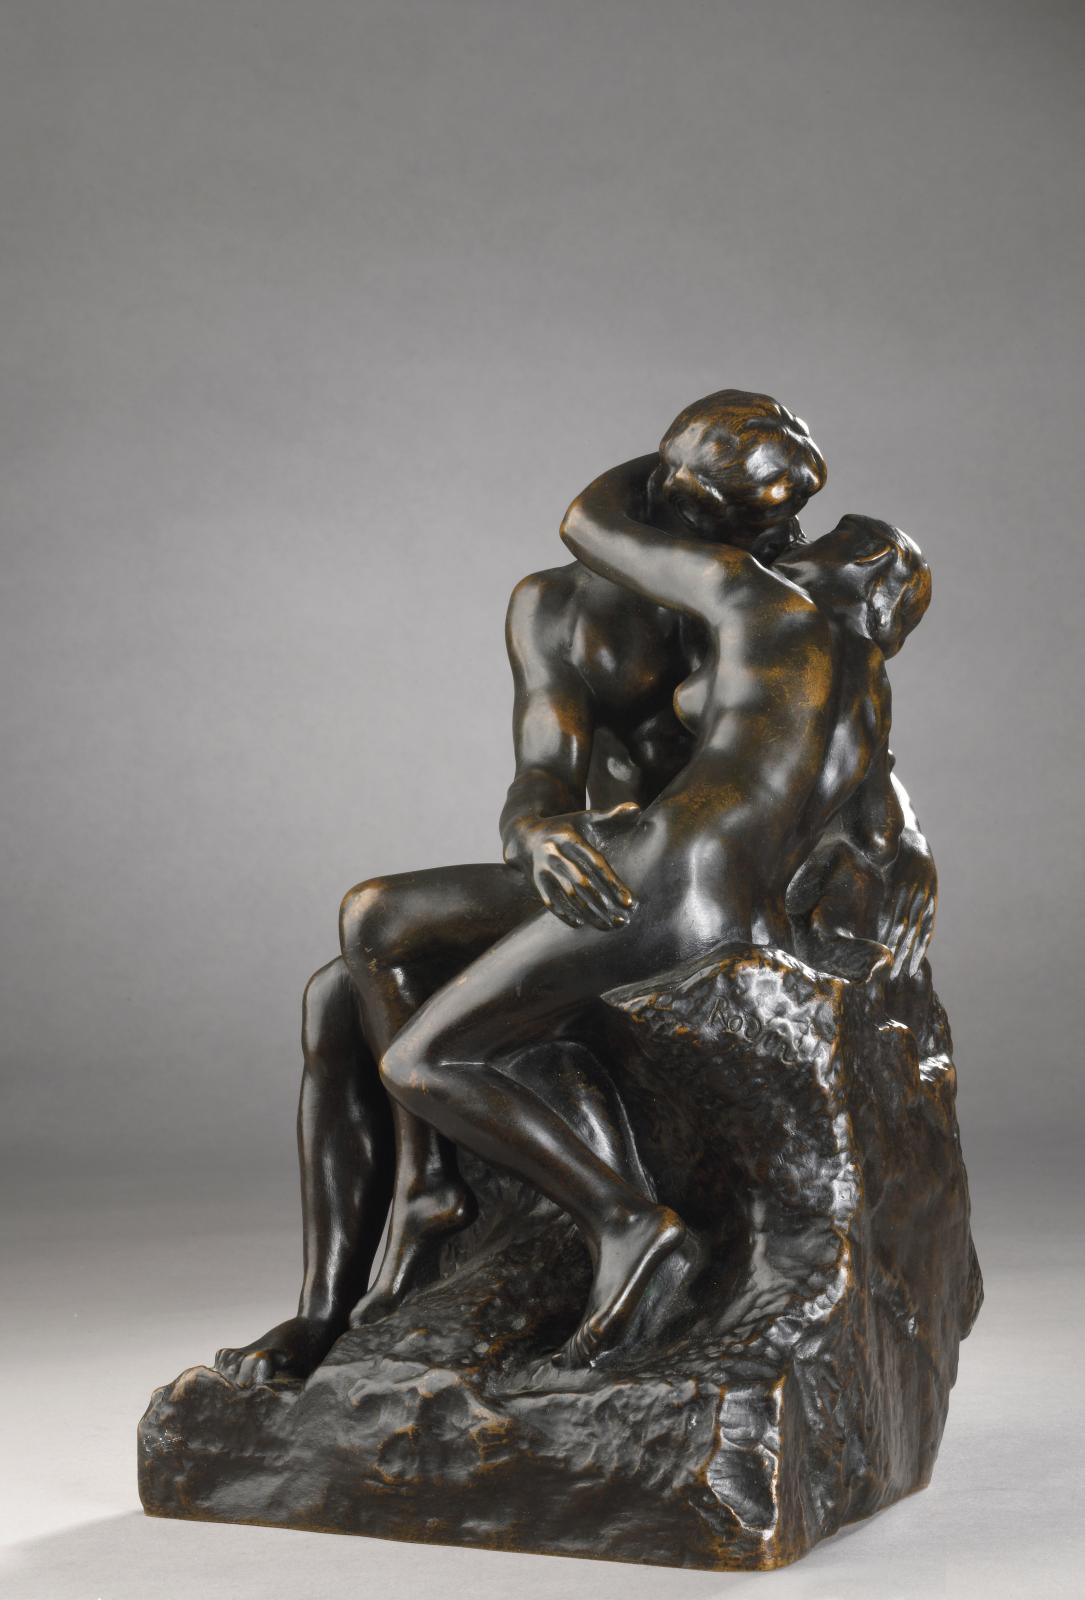 Un baiser de Rodin plein de vie